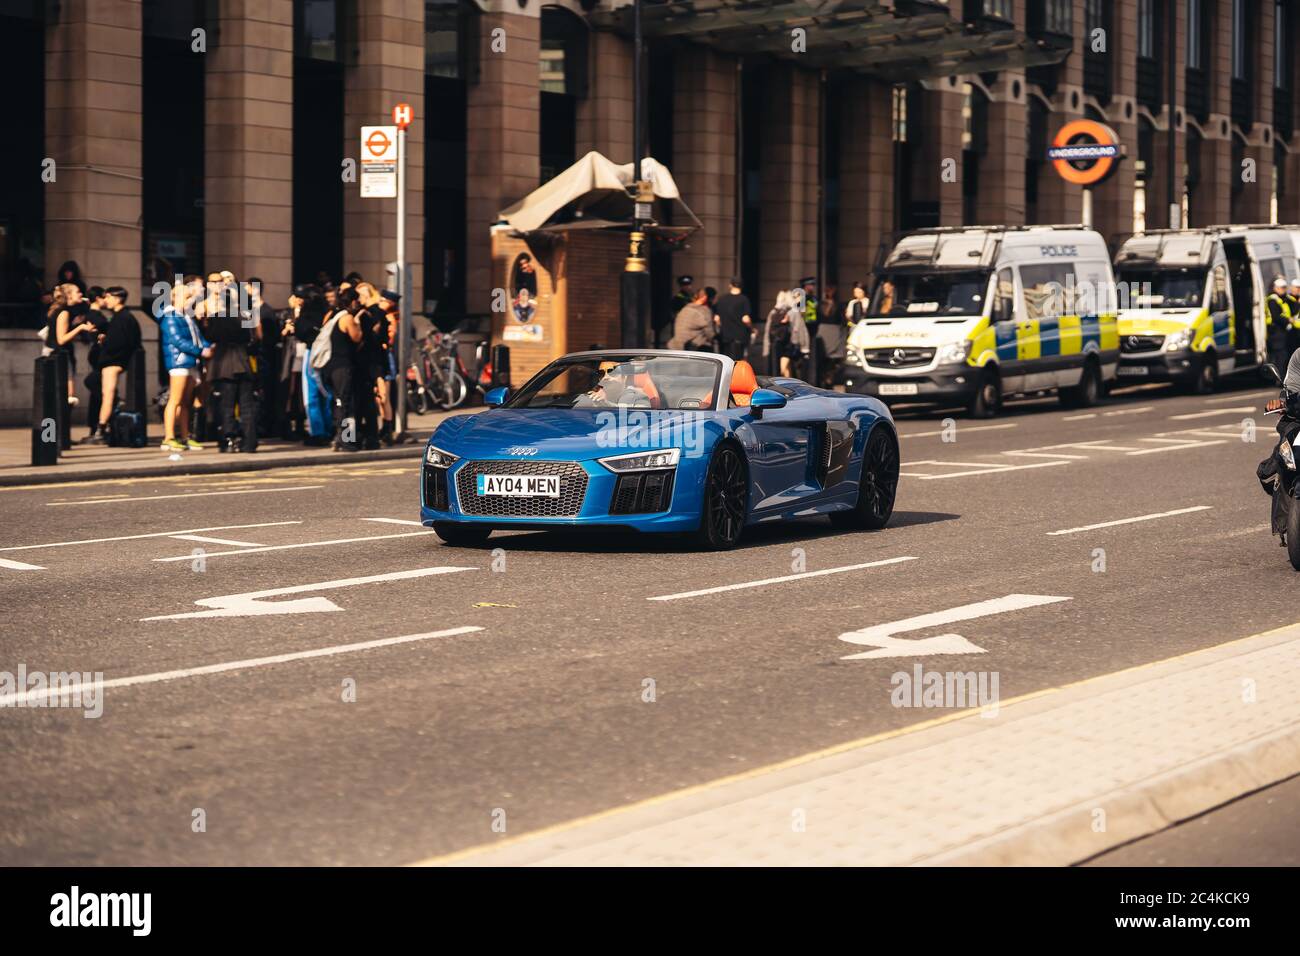 Londres / Royaume-Uni - 06/27/2020: Audi R8 Supercar à la place du Parlement Banque D'Images